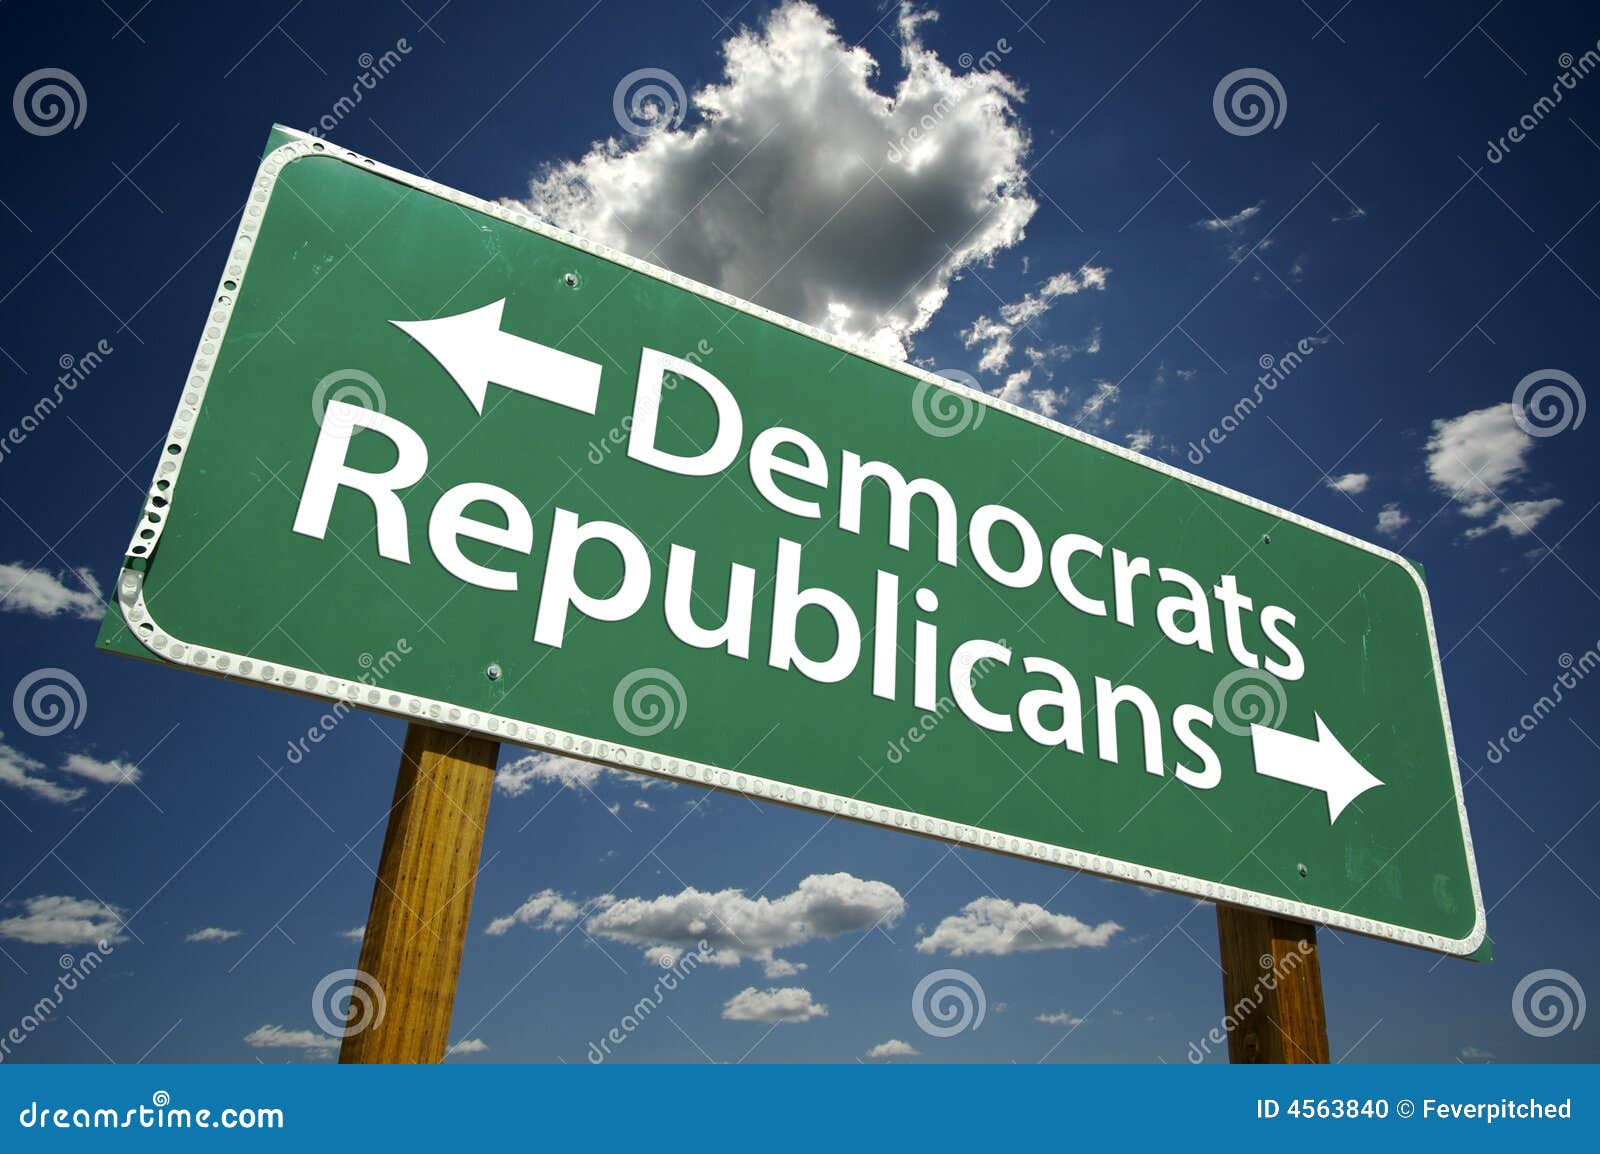 democrats, republicans - road-sign.